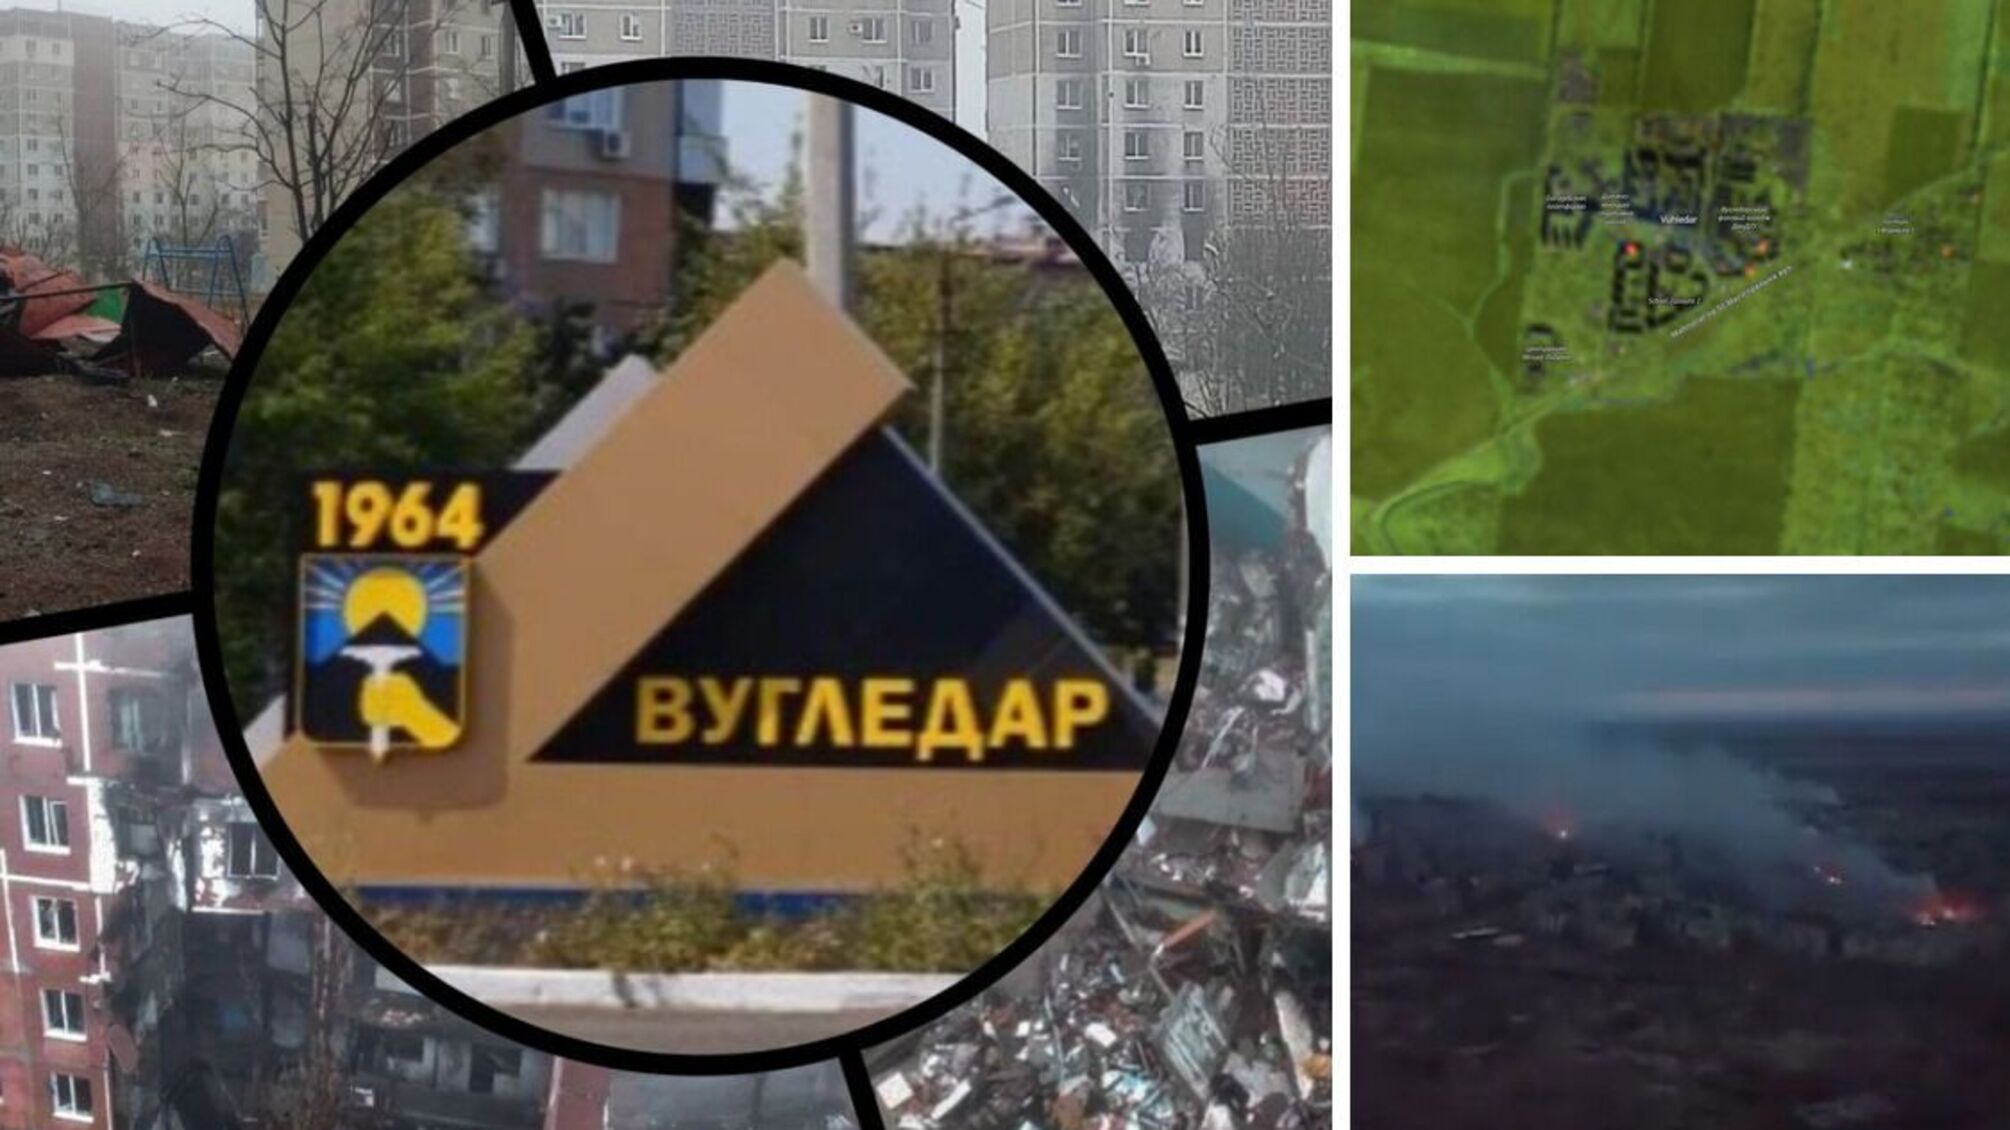 Вугледар – у вогні: наслідки російської атаки зафіксував супутник (знімки, відео)